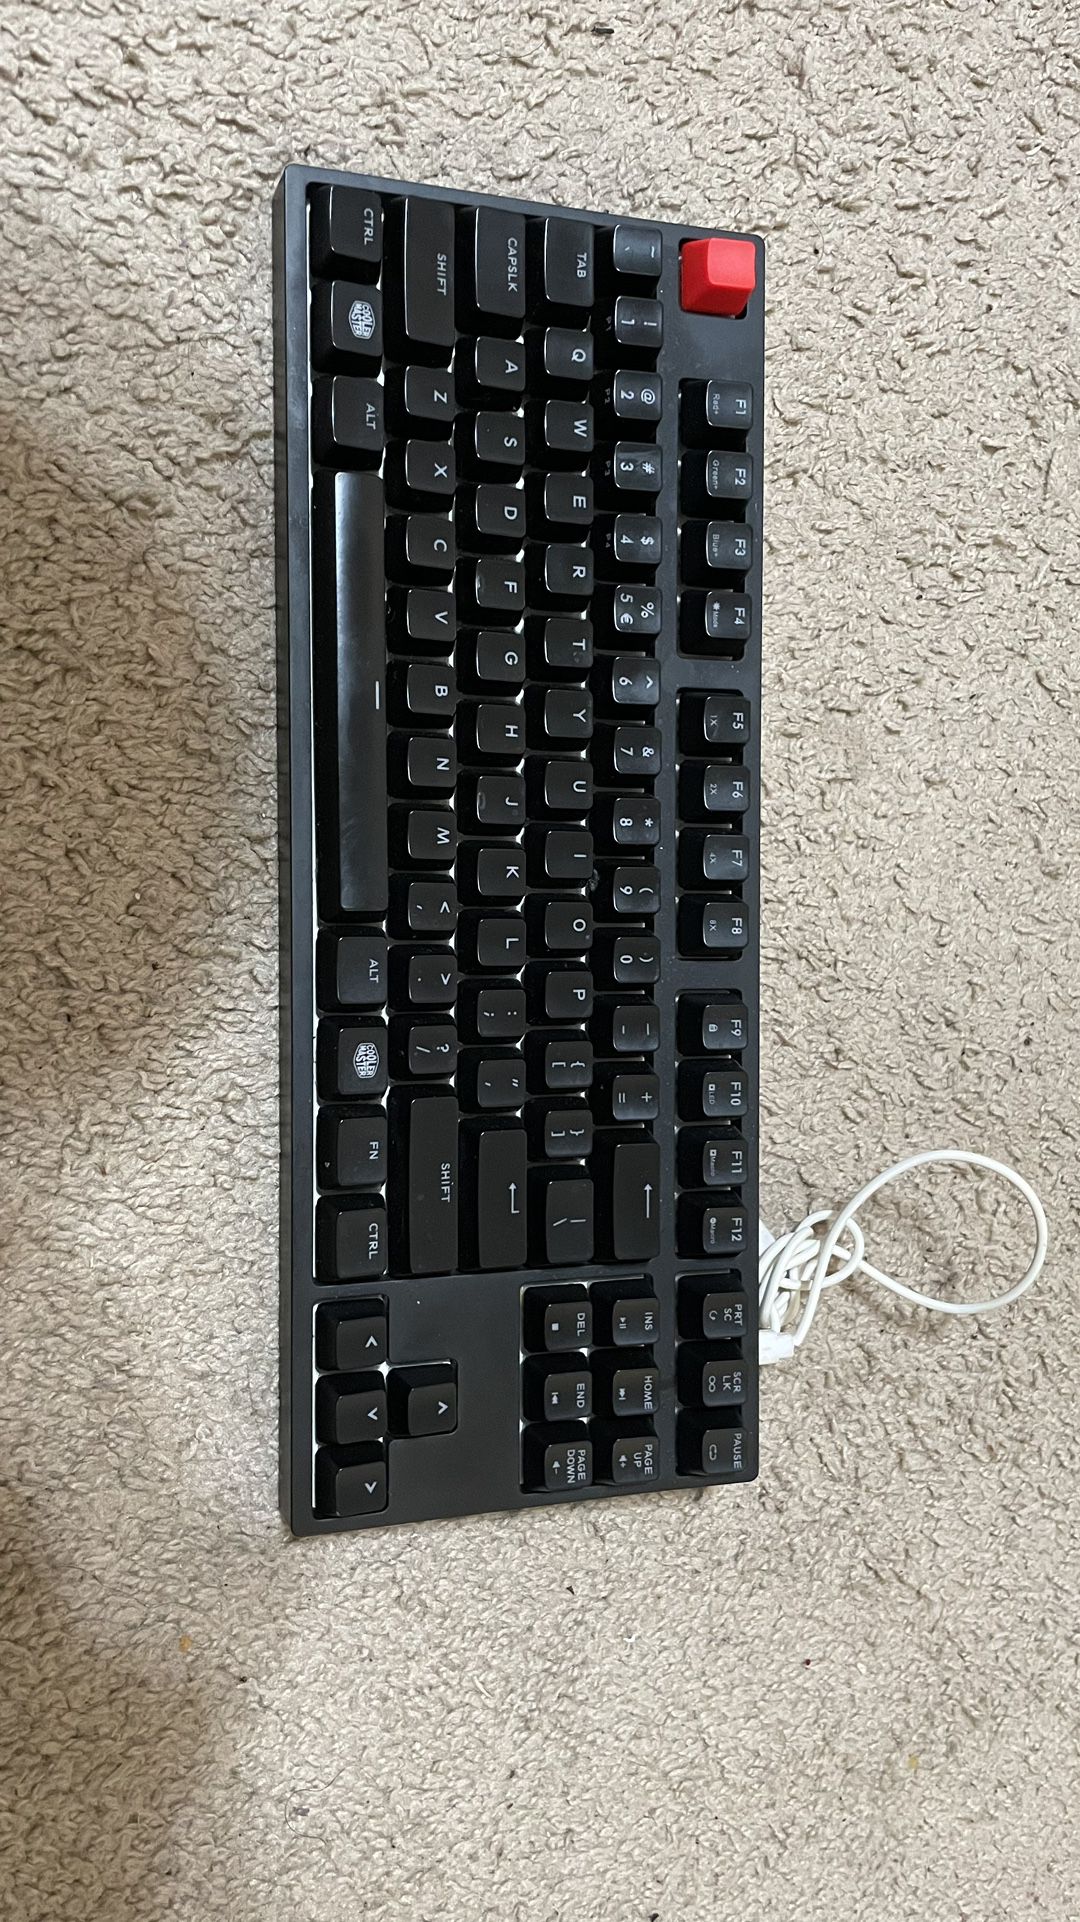 Coolermaster Mechanical Gaming Keyboard 